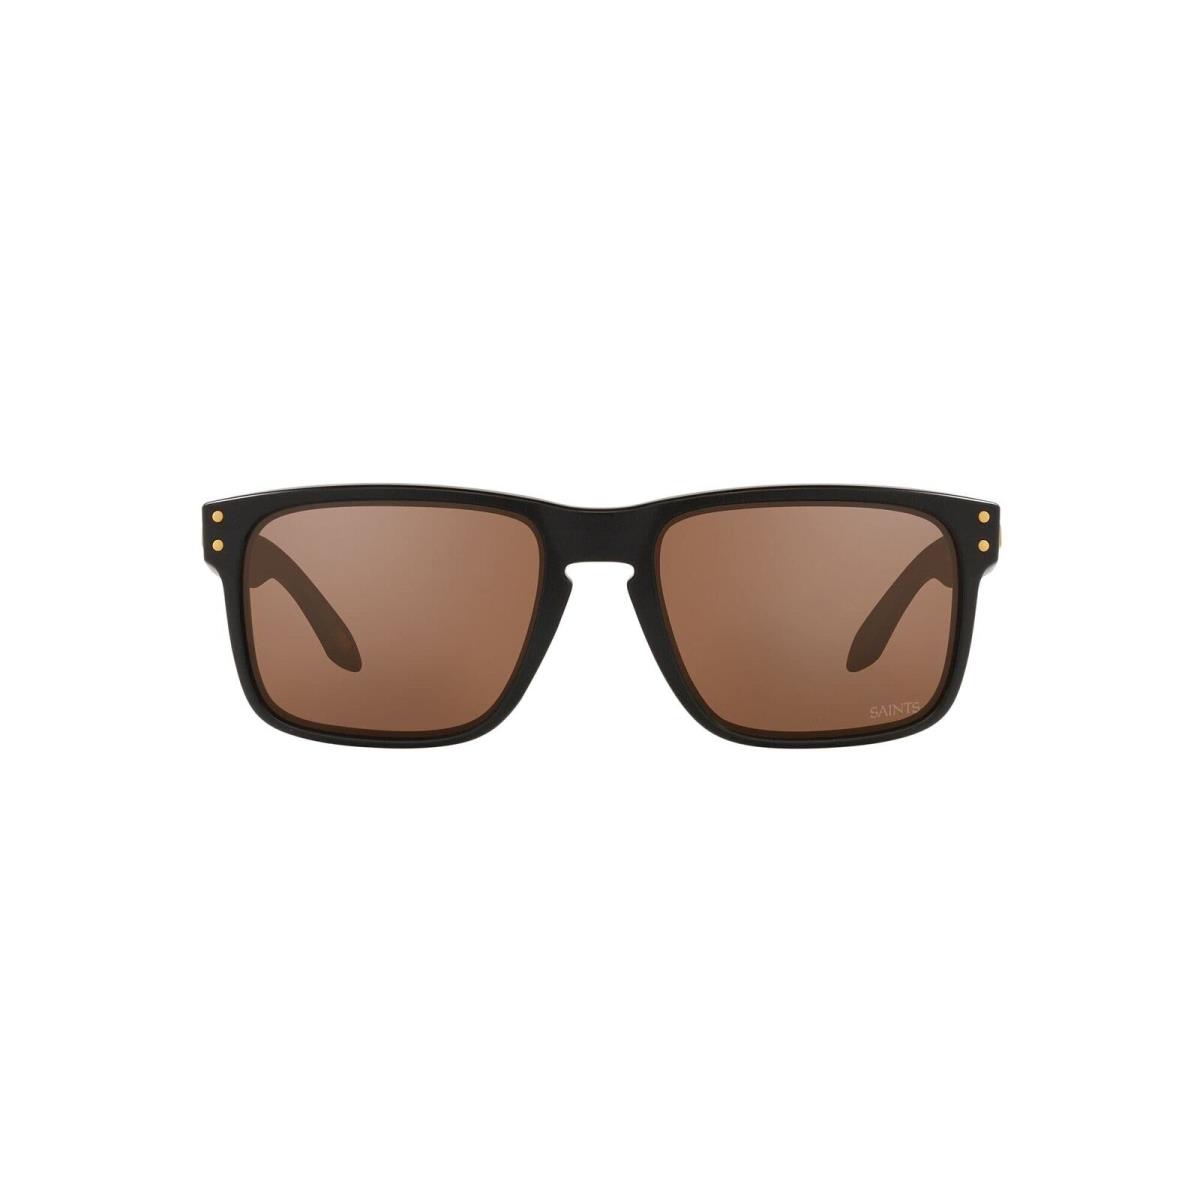 OO9102-S4 Mens Oakley Holbrook Sunglasses - Nfl Orlean Saints - Frame: Matte Black, Lens: